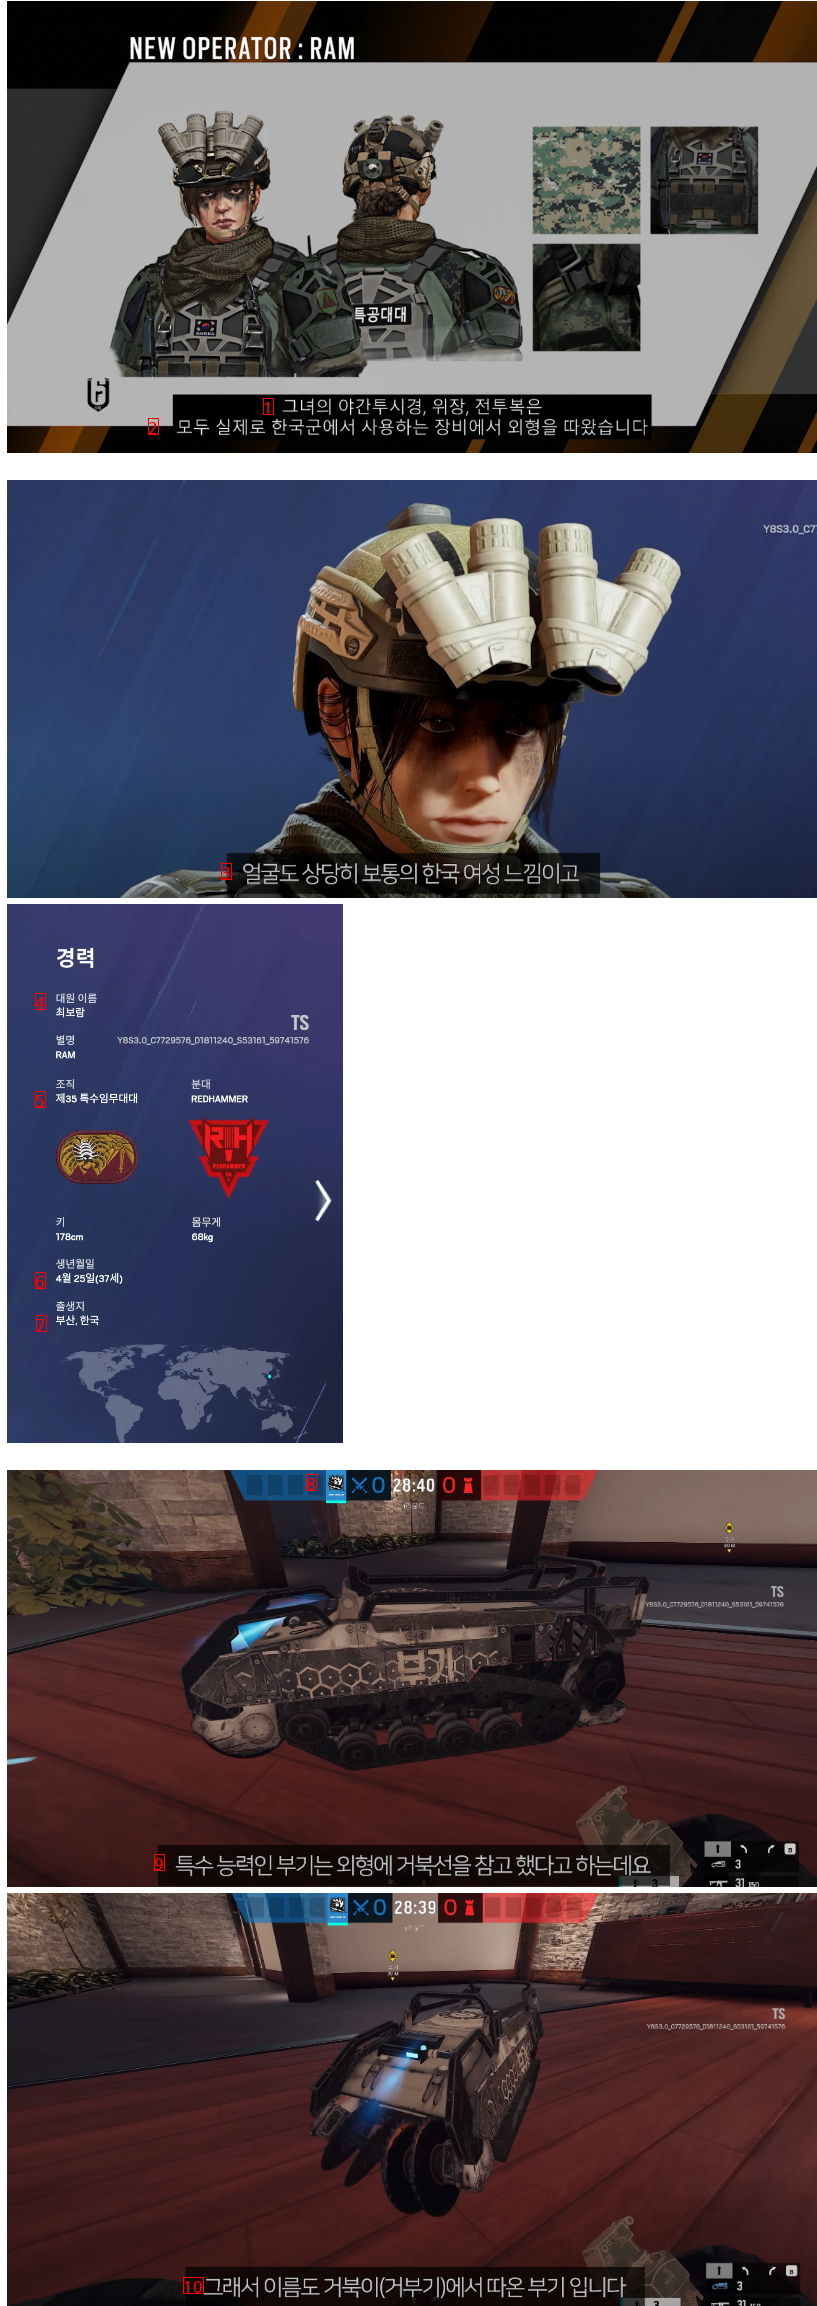 이상하리만큼 한국을 잘챙기는 게임 한국인 캐릭터 근황.jpg